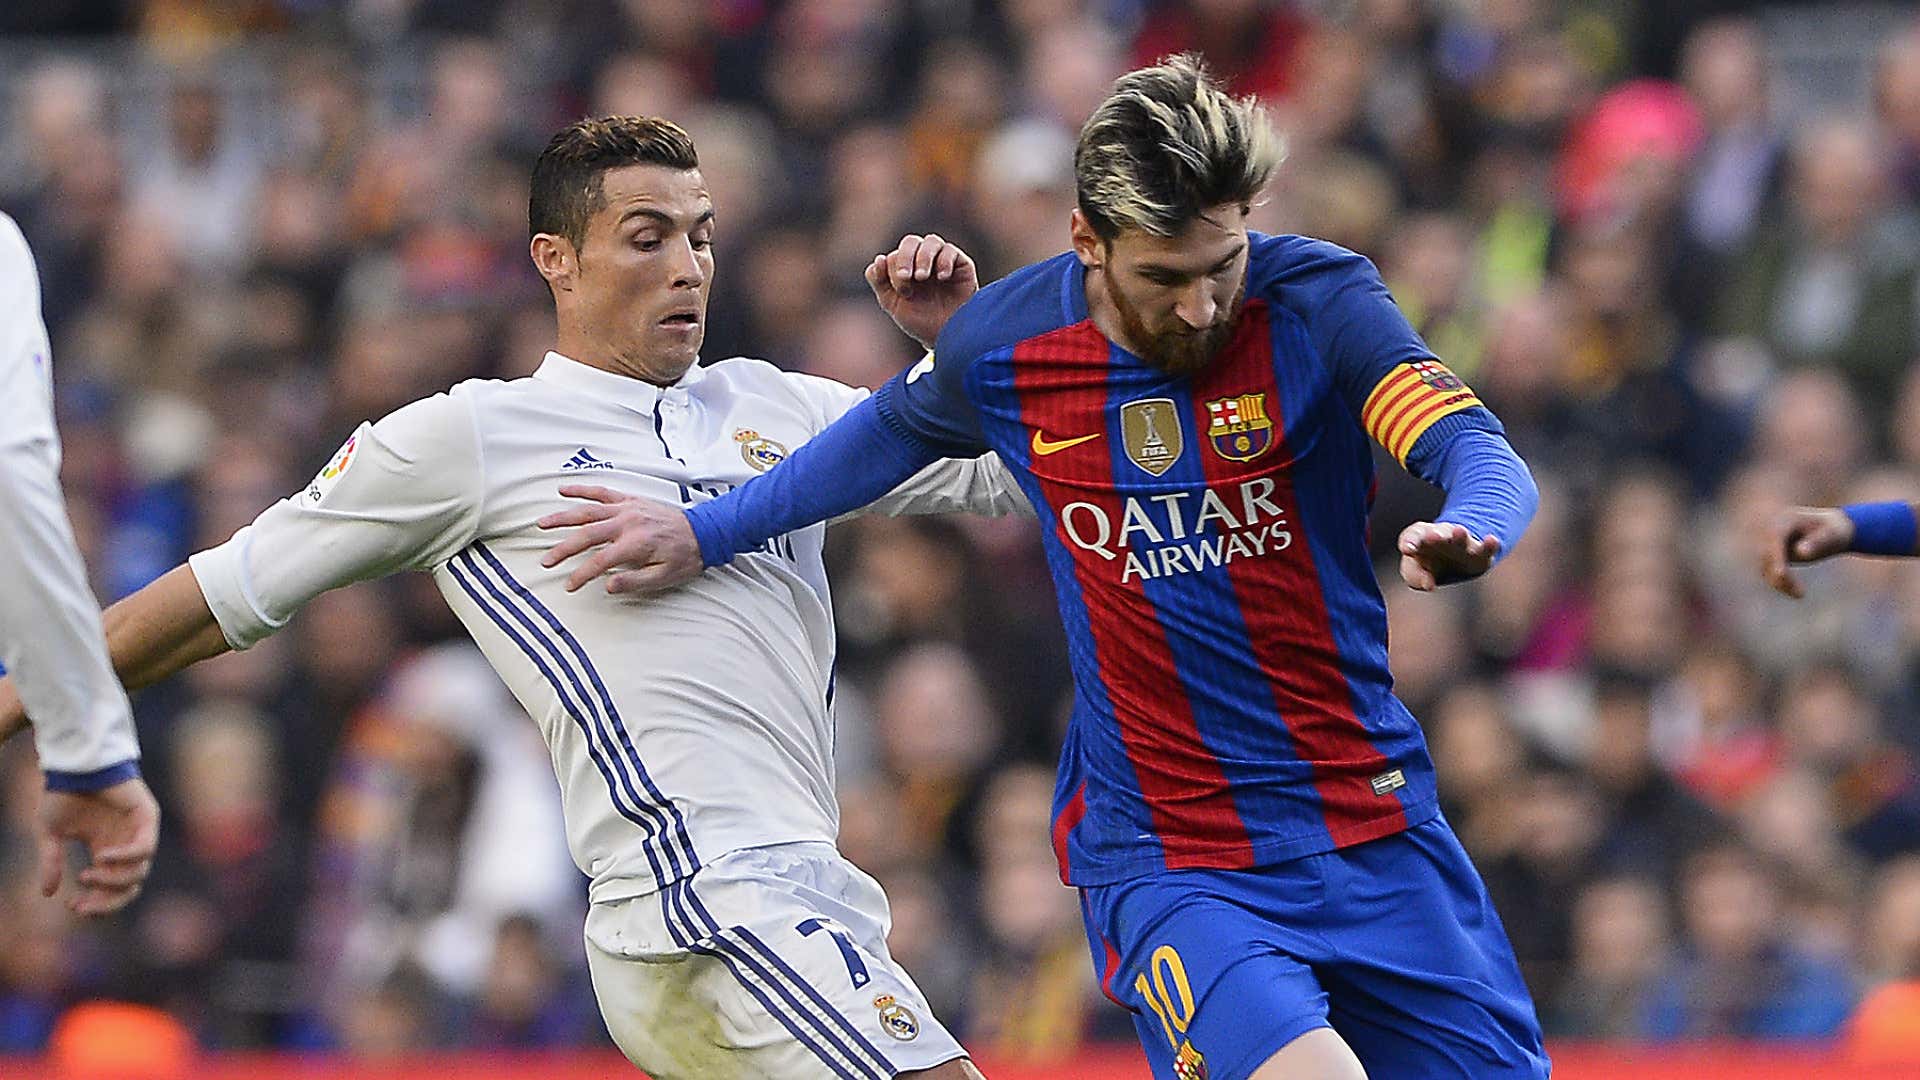 Superstars Messi und Ronaldo sorgen mit gemeinsamen Bild für Wirbel